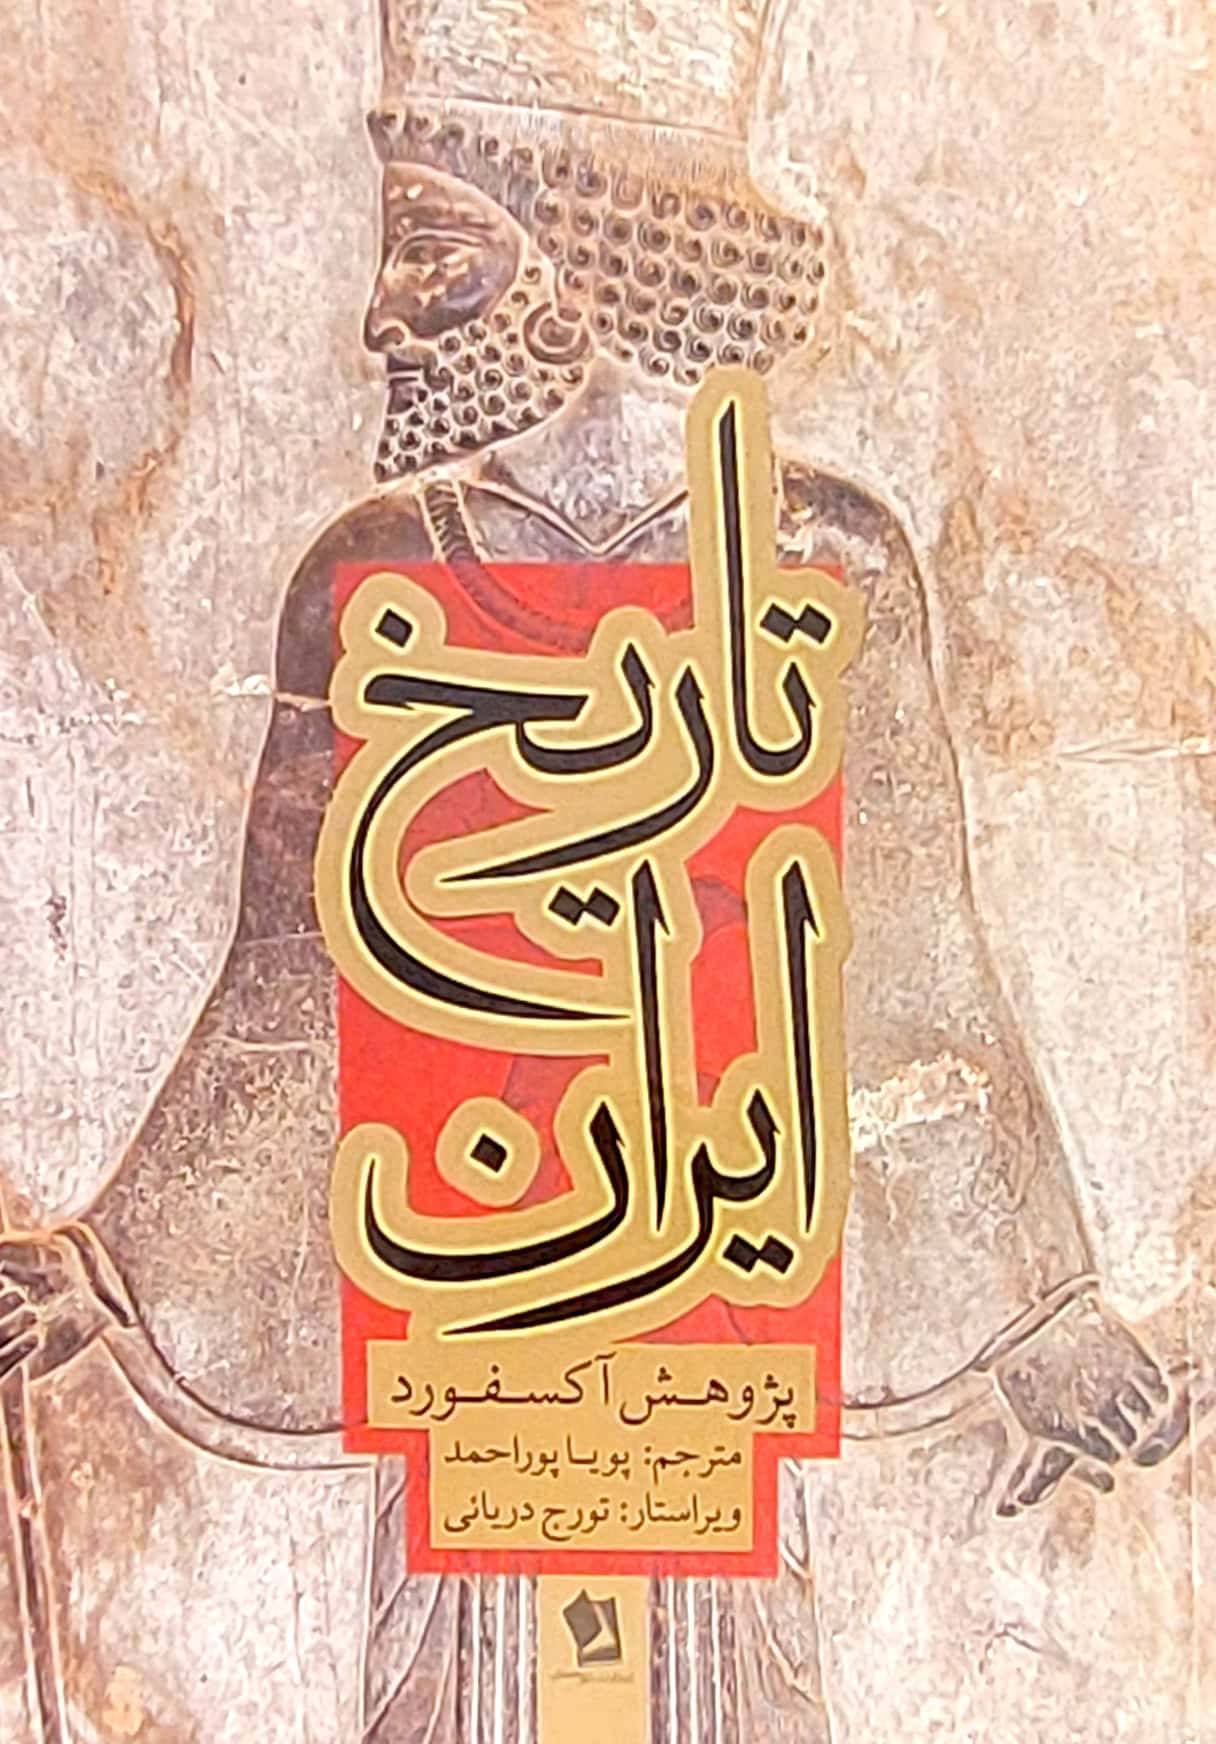 کتاب تاریخ ایران پژوهش دانشگاه آکسفورد ویراستار تورج دریائی انتشارات شیرمحمدی